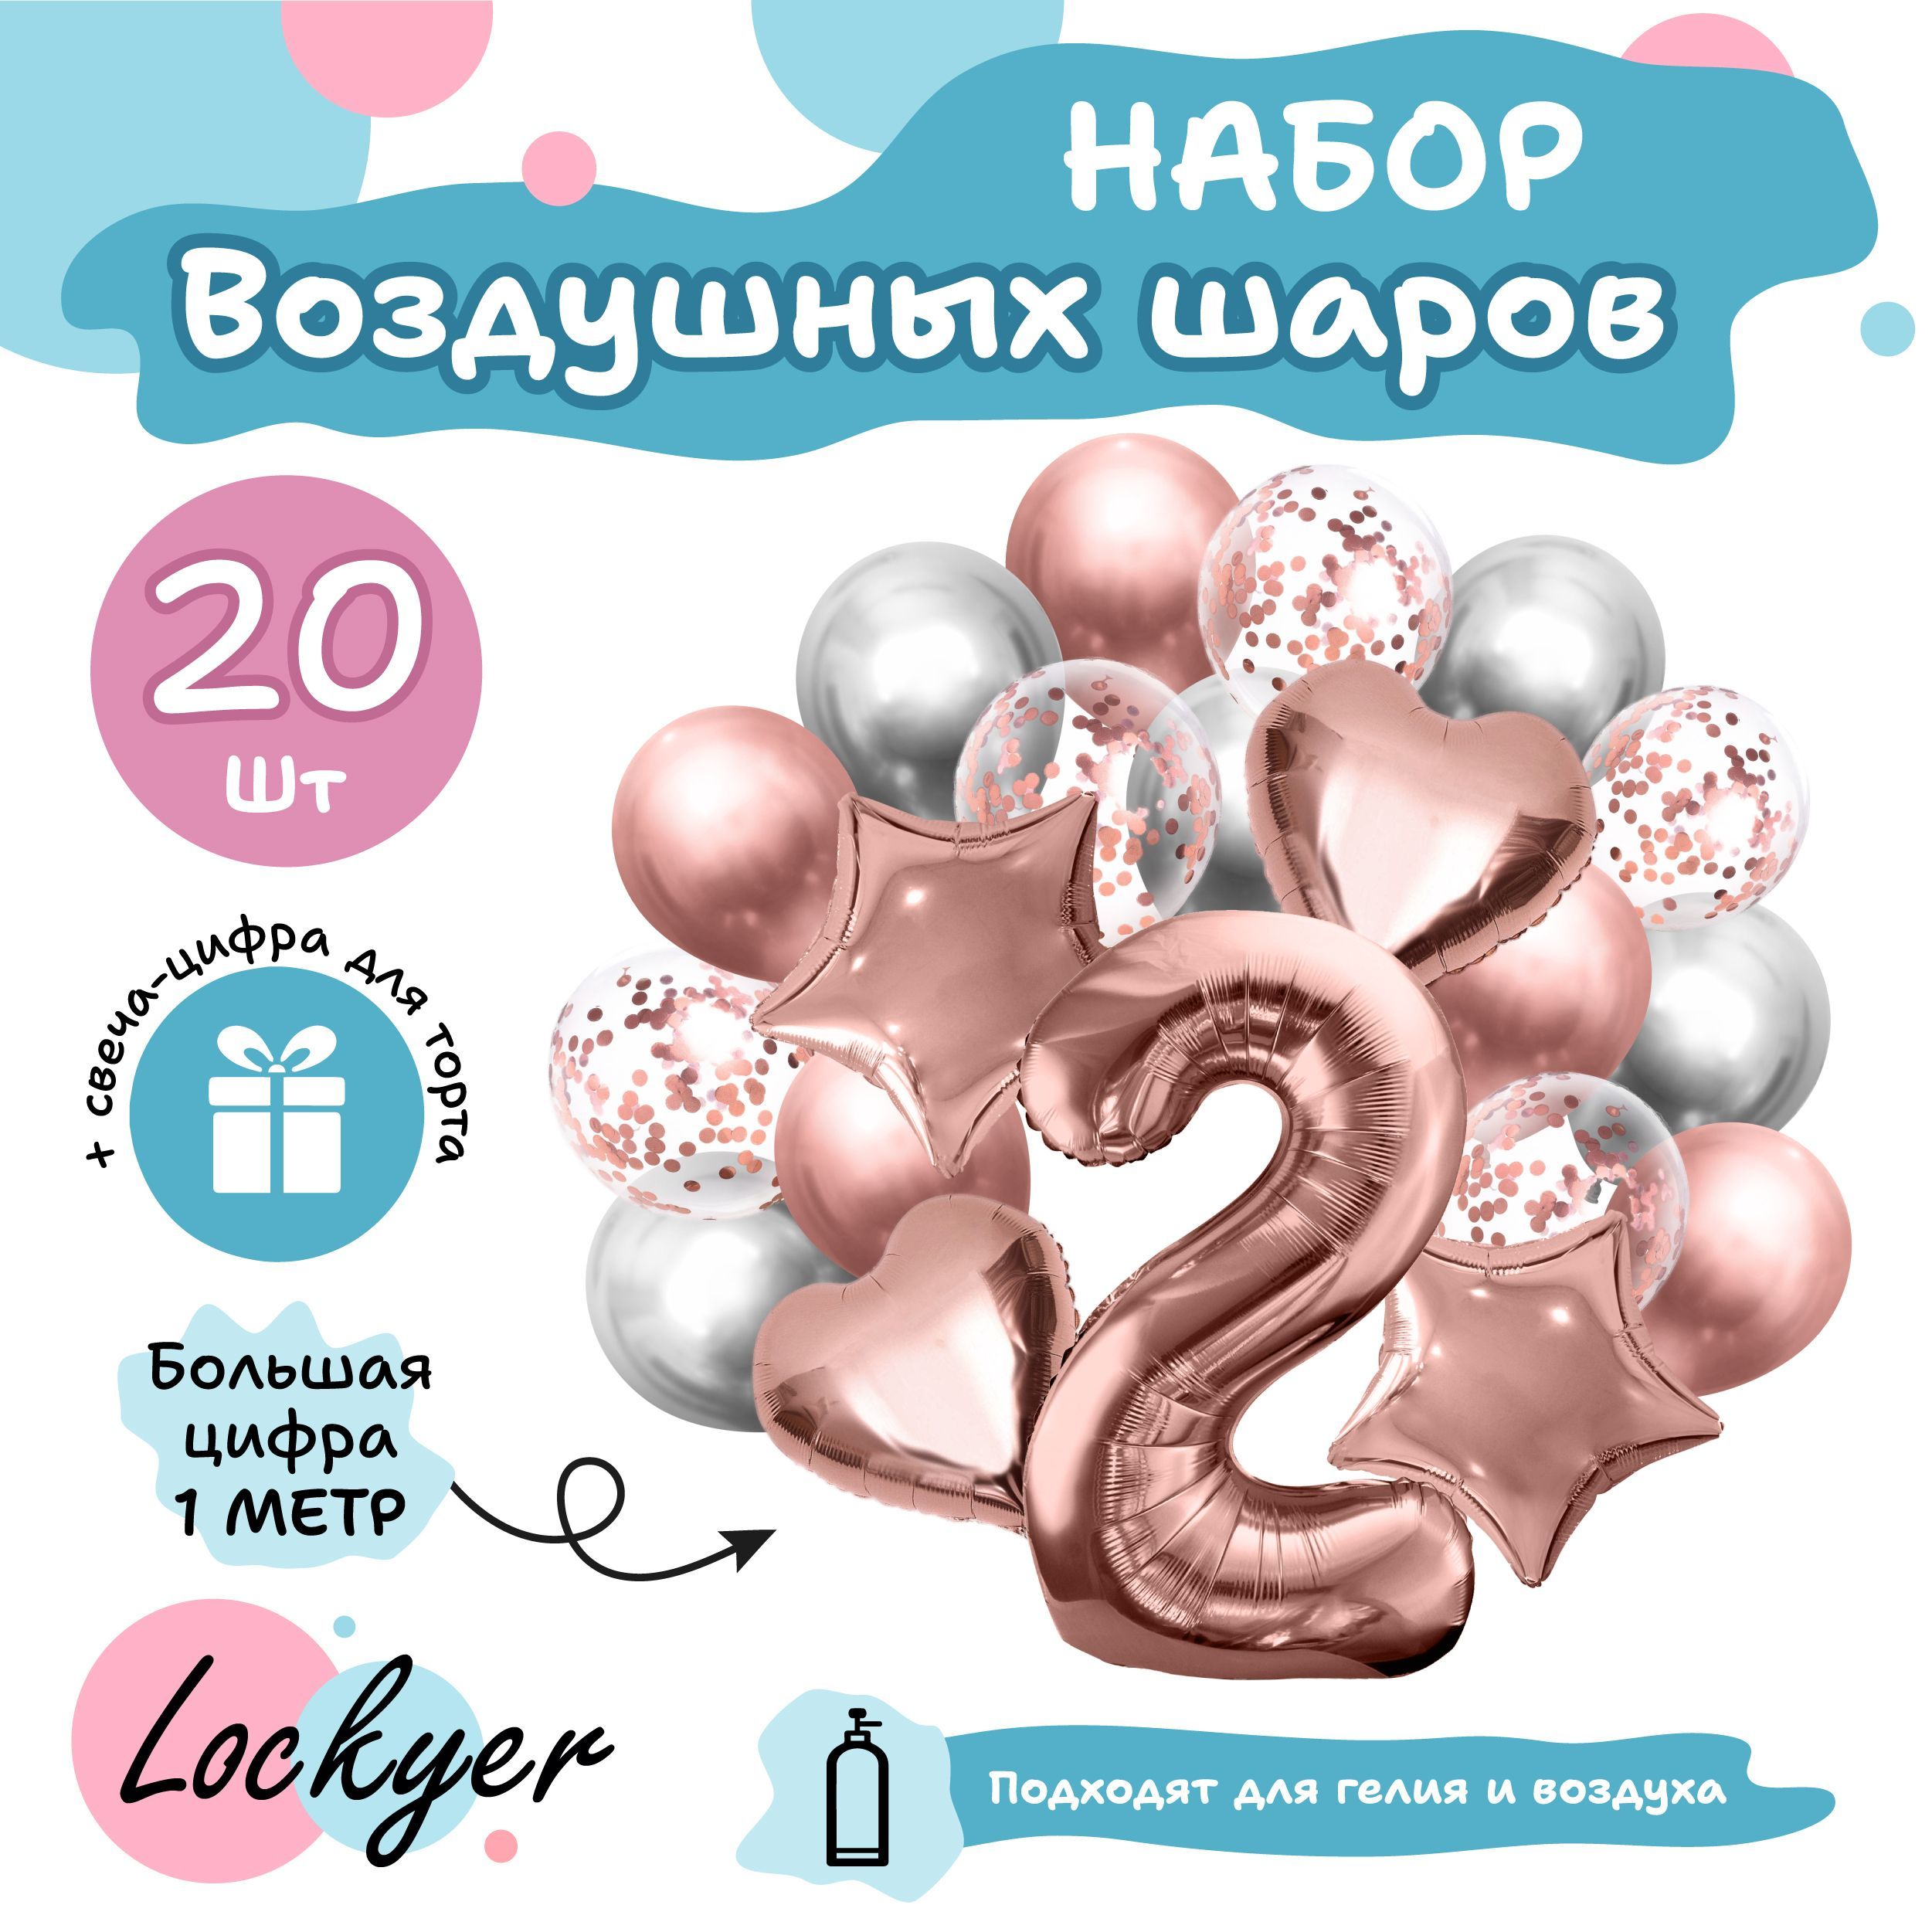 Детские украшения • купить ювелирные украшения для девочки в Минске, цена в ORO